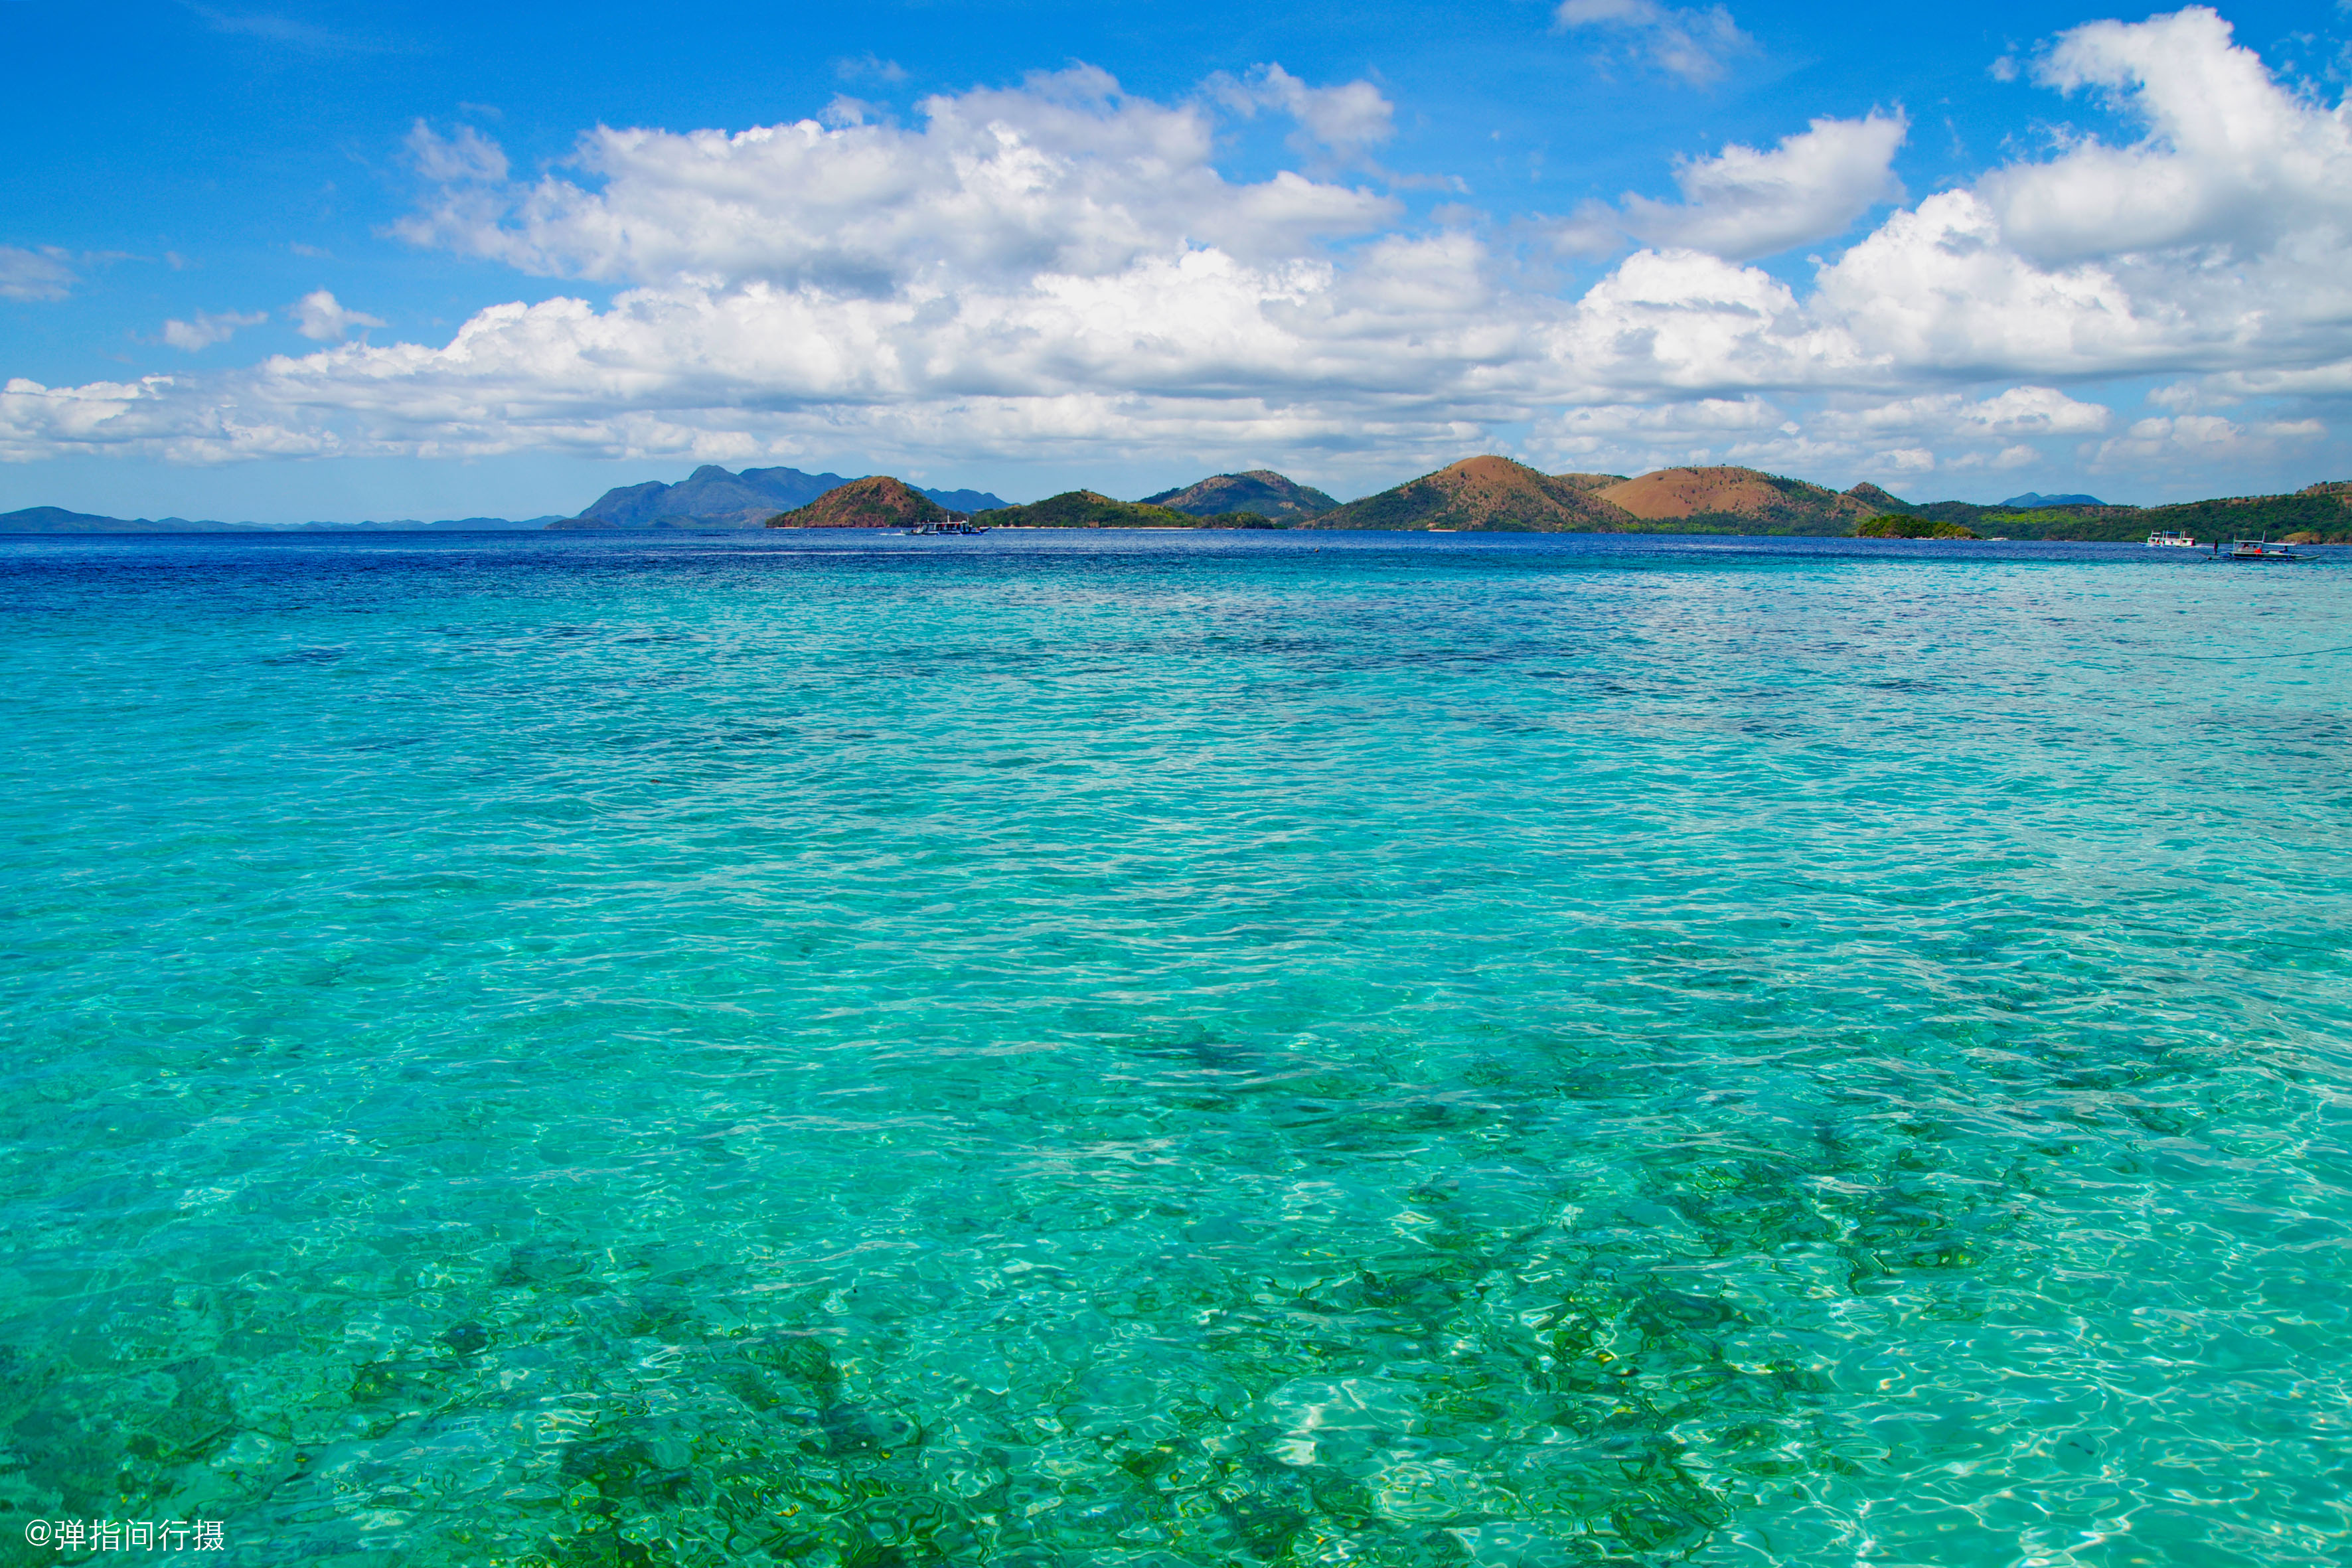 菲律宾最低调海岛,海水美如绿翡翠,有无数二战军艇炸沉于此